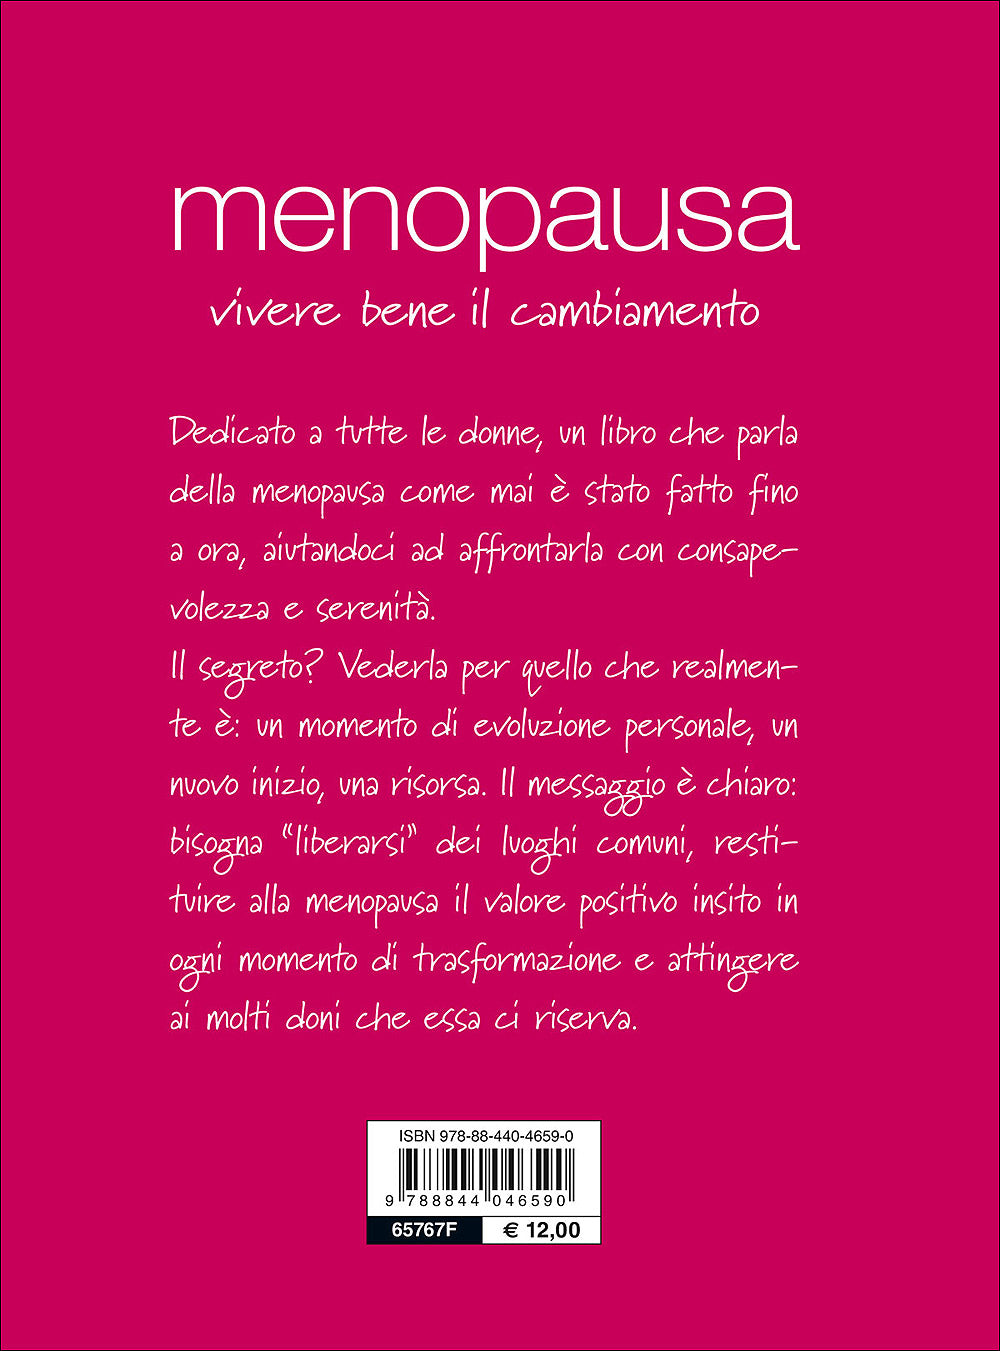 Menopausa::Vivere bene il cambiamento